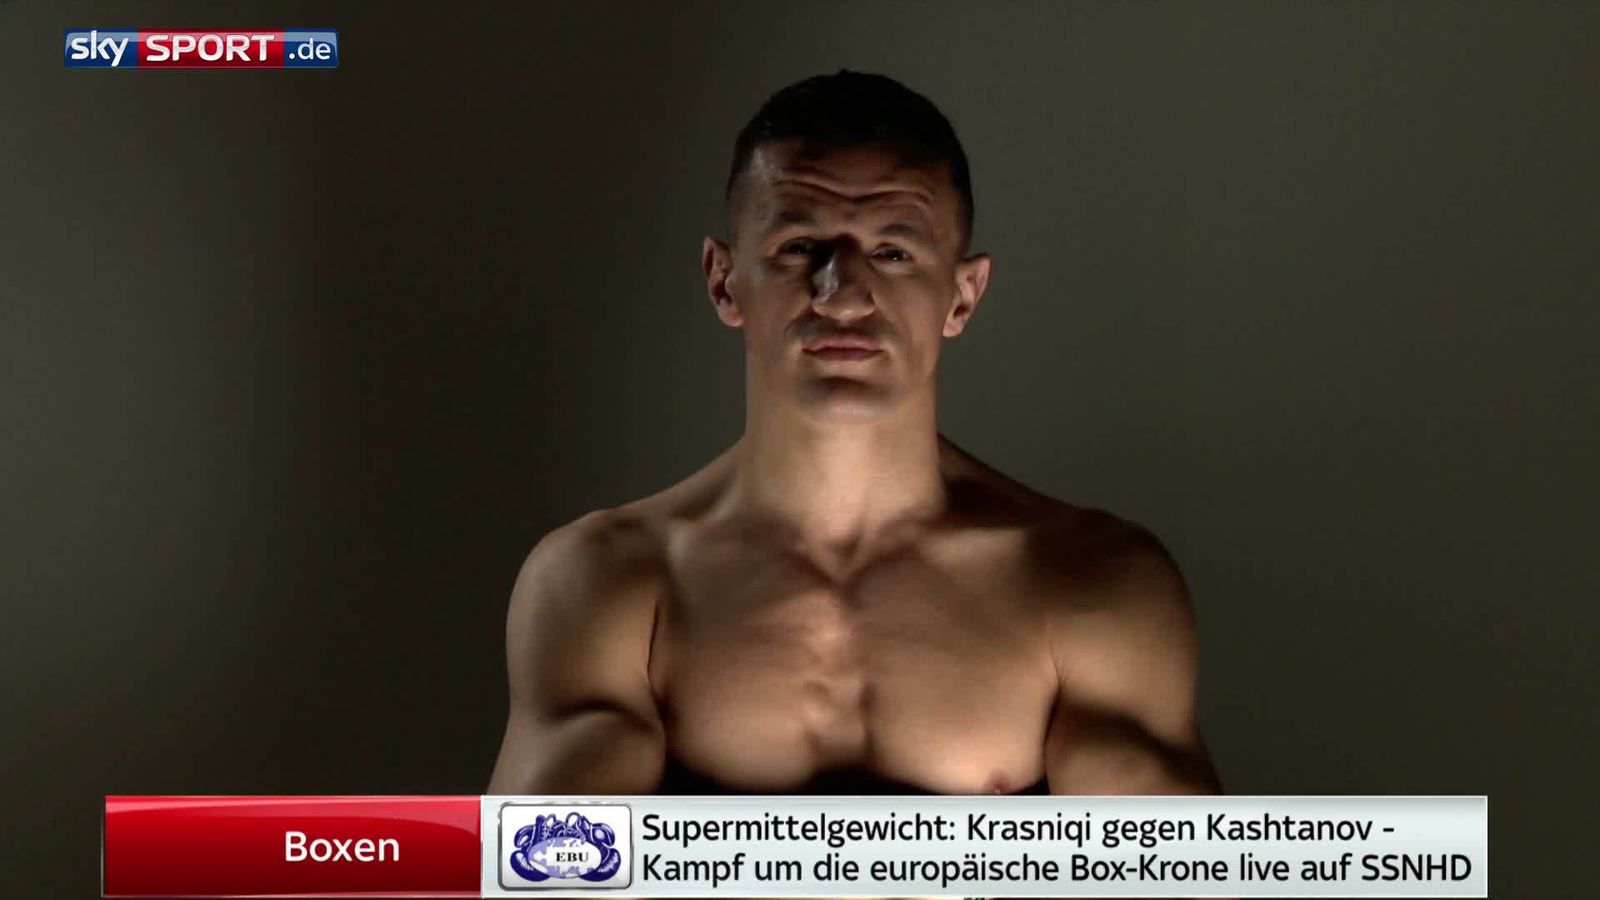 Boxen live auf Sky! Krasniqi gegen Kashtanov Boxen News Sky Sport